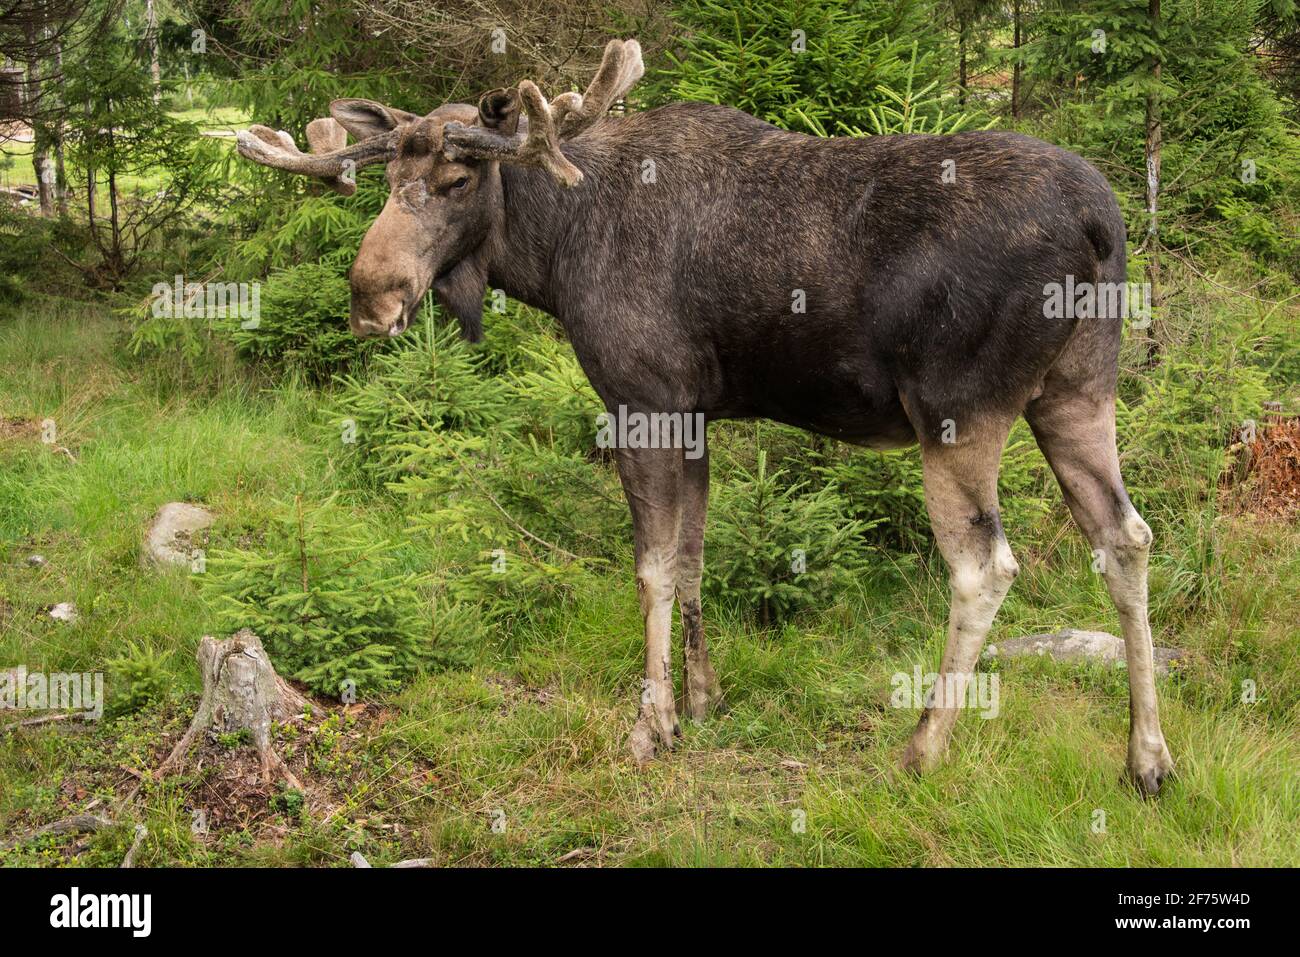 Elchbulle en einem Wildpark en Schweden - alce de toro en Un parque de vida silvestre en Suecia Foto de stock